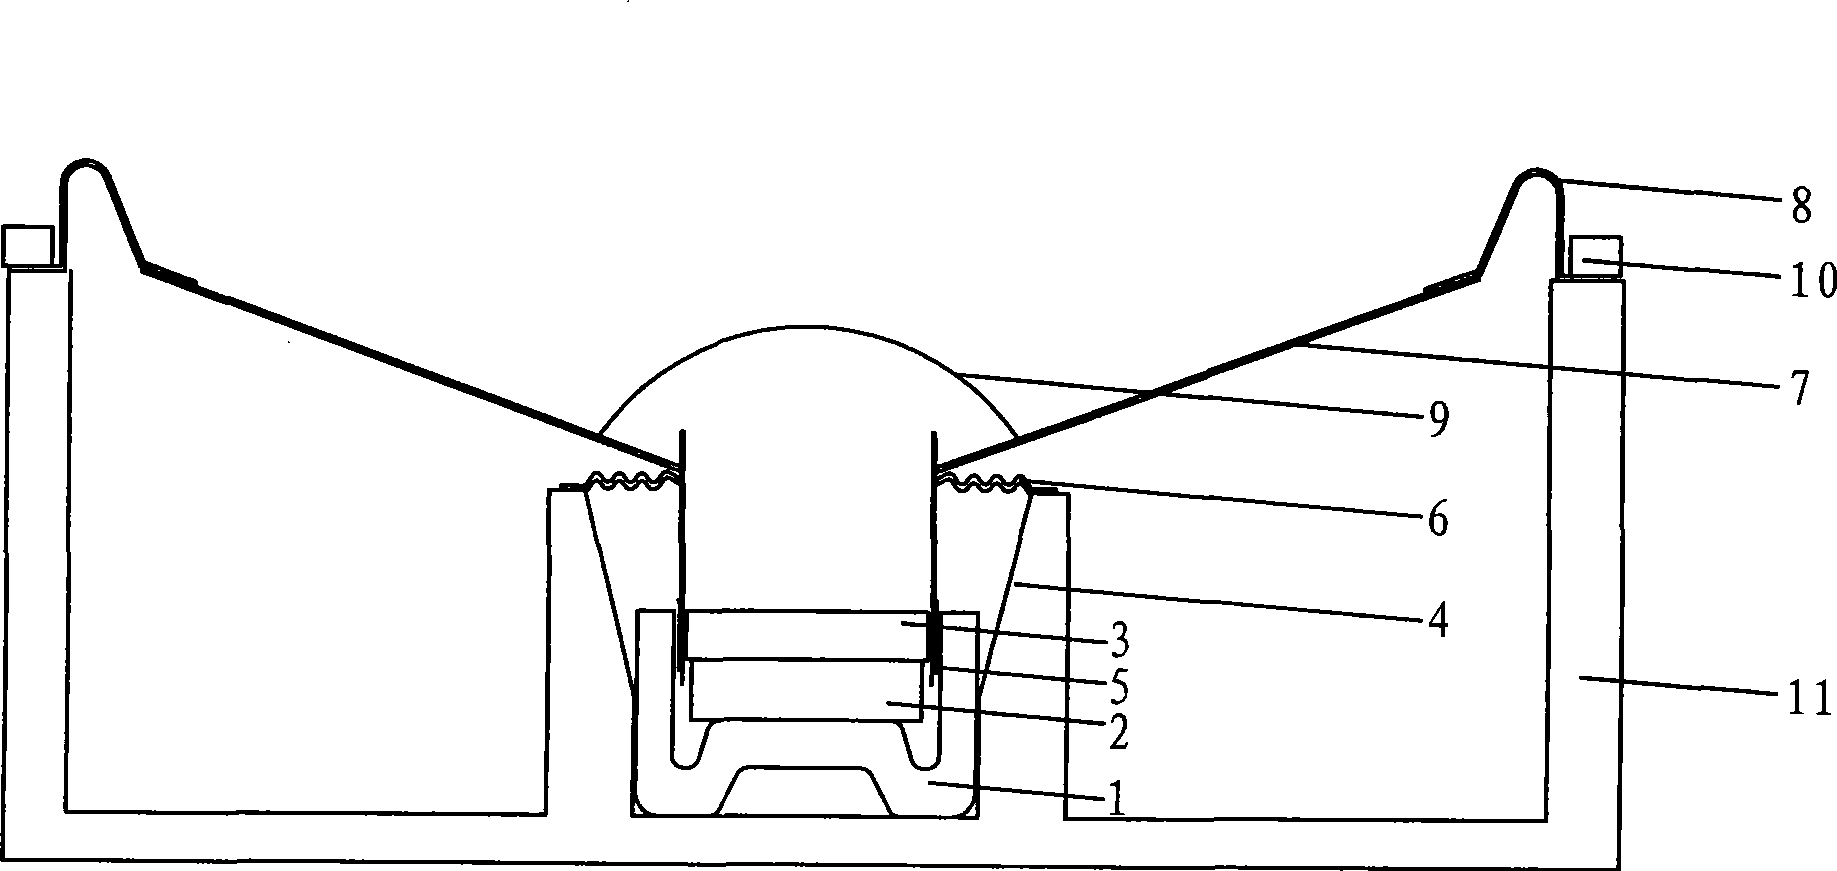 A loudspeaker box